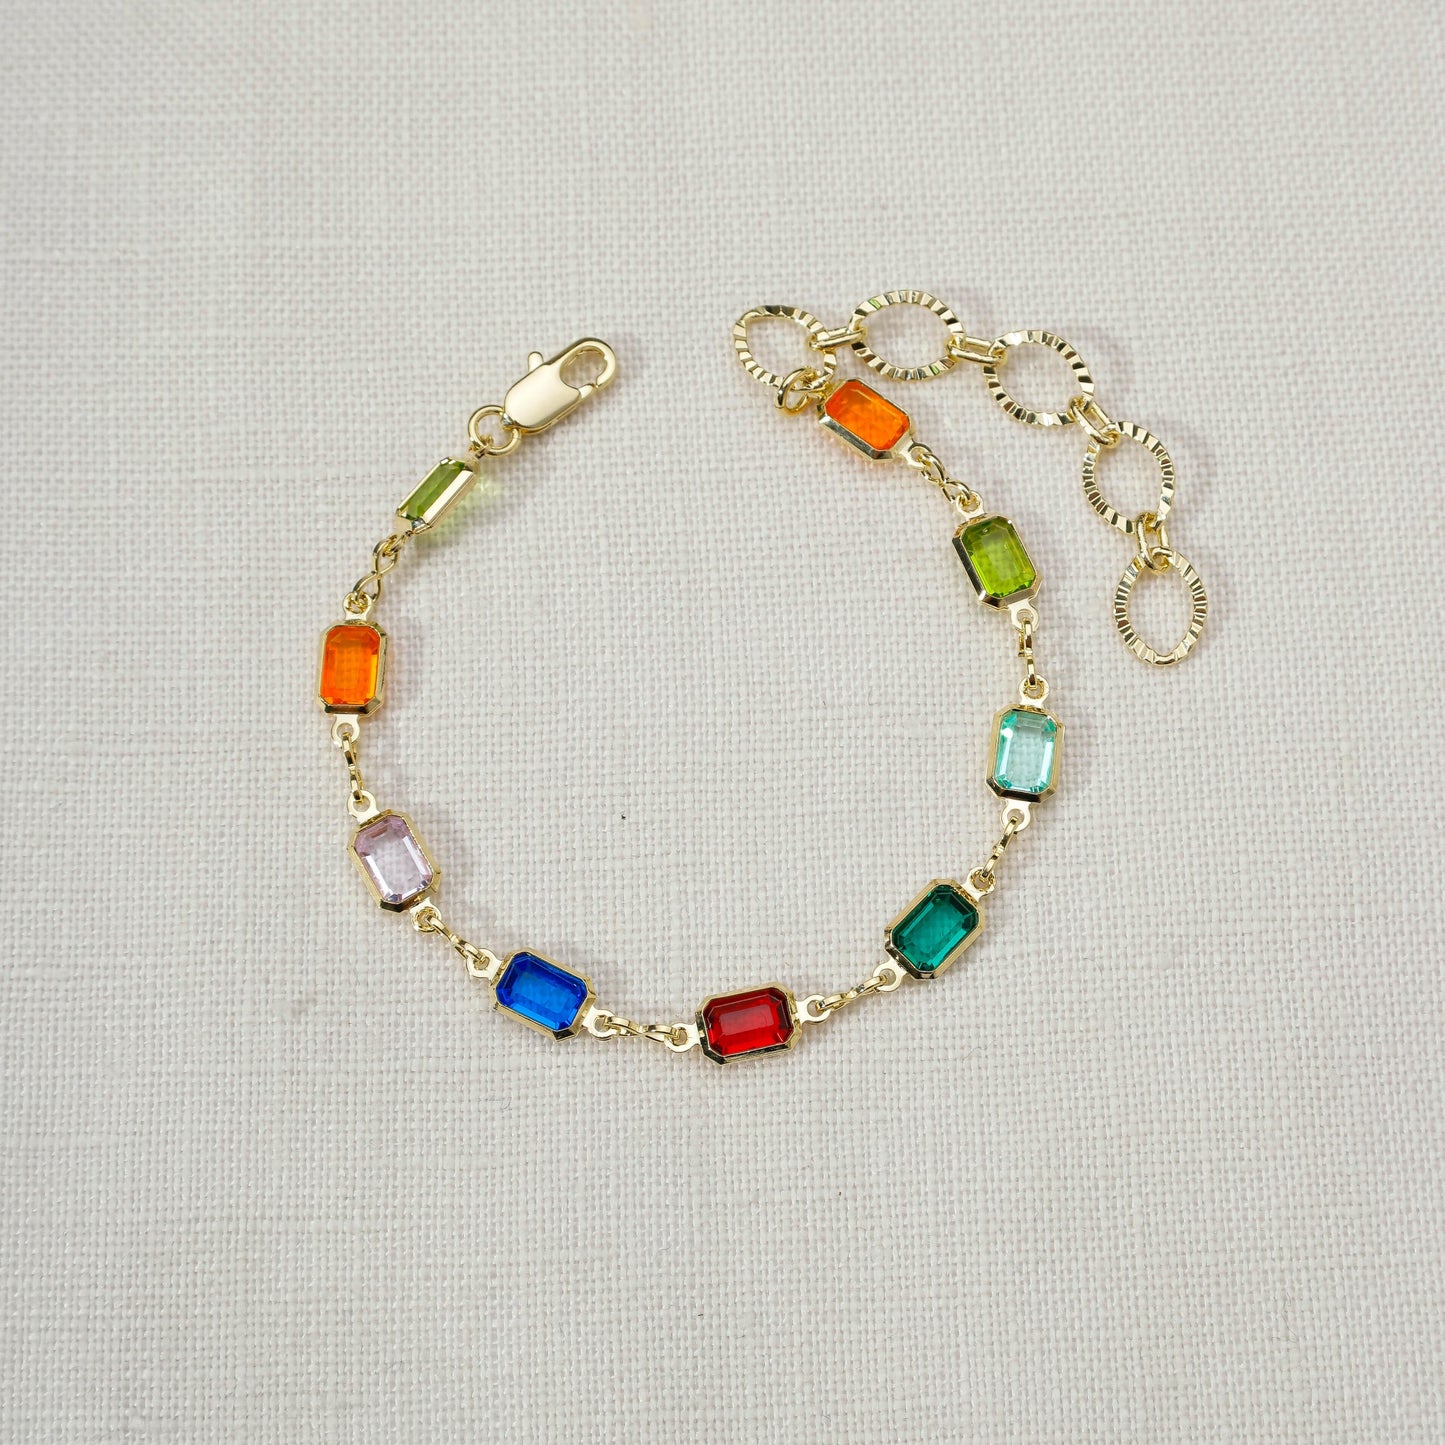 Complete Set Of 18k Gold Filled Multicolor Necklace, Bracelet And Anklet For Wholesale